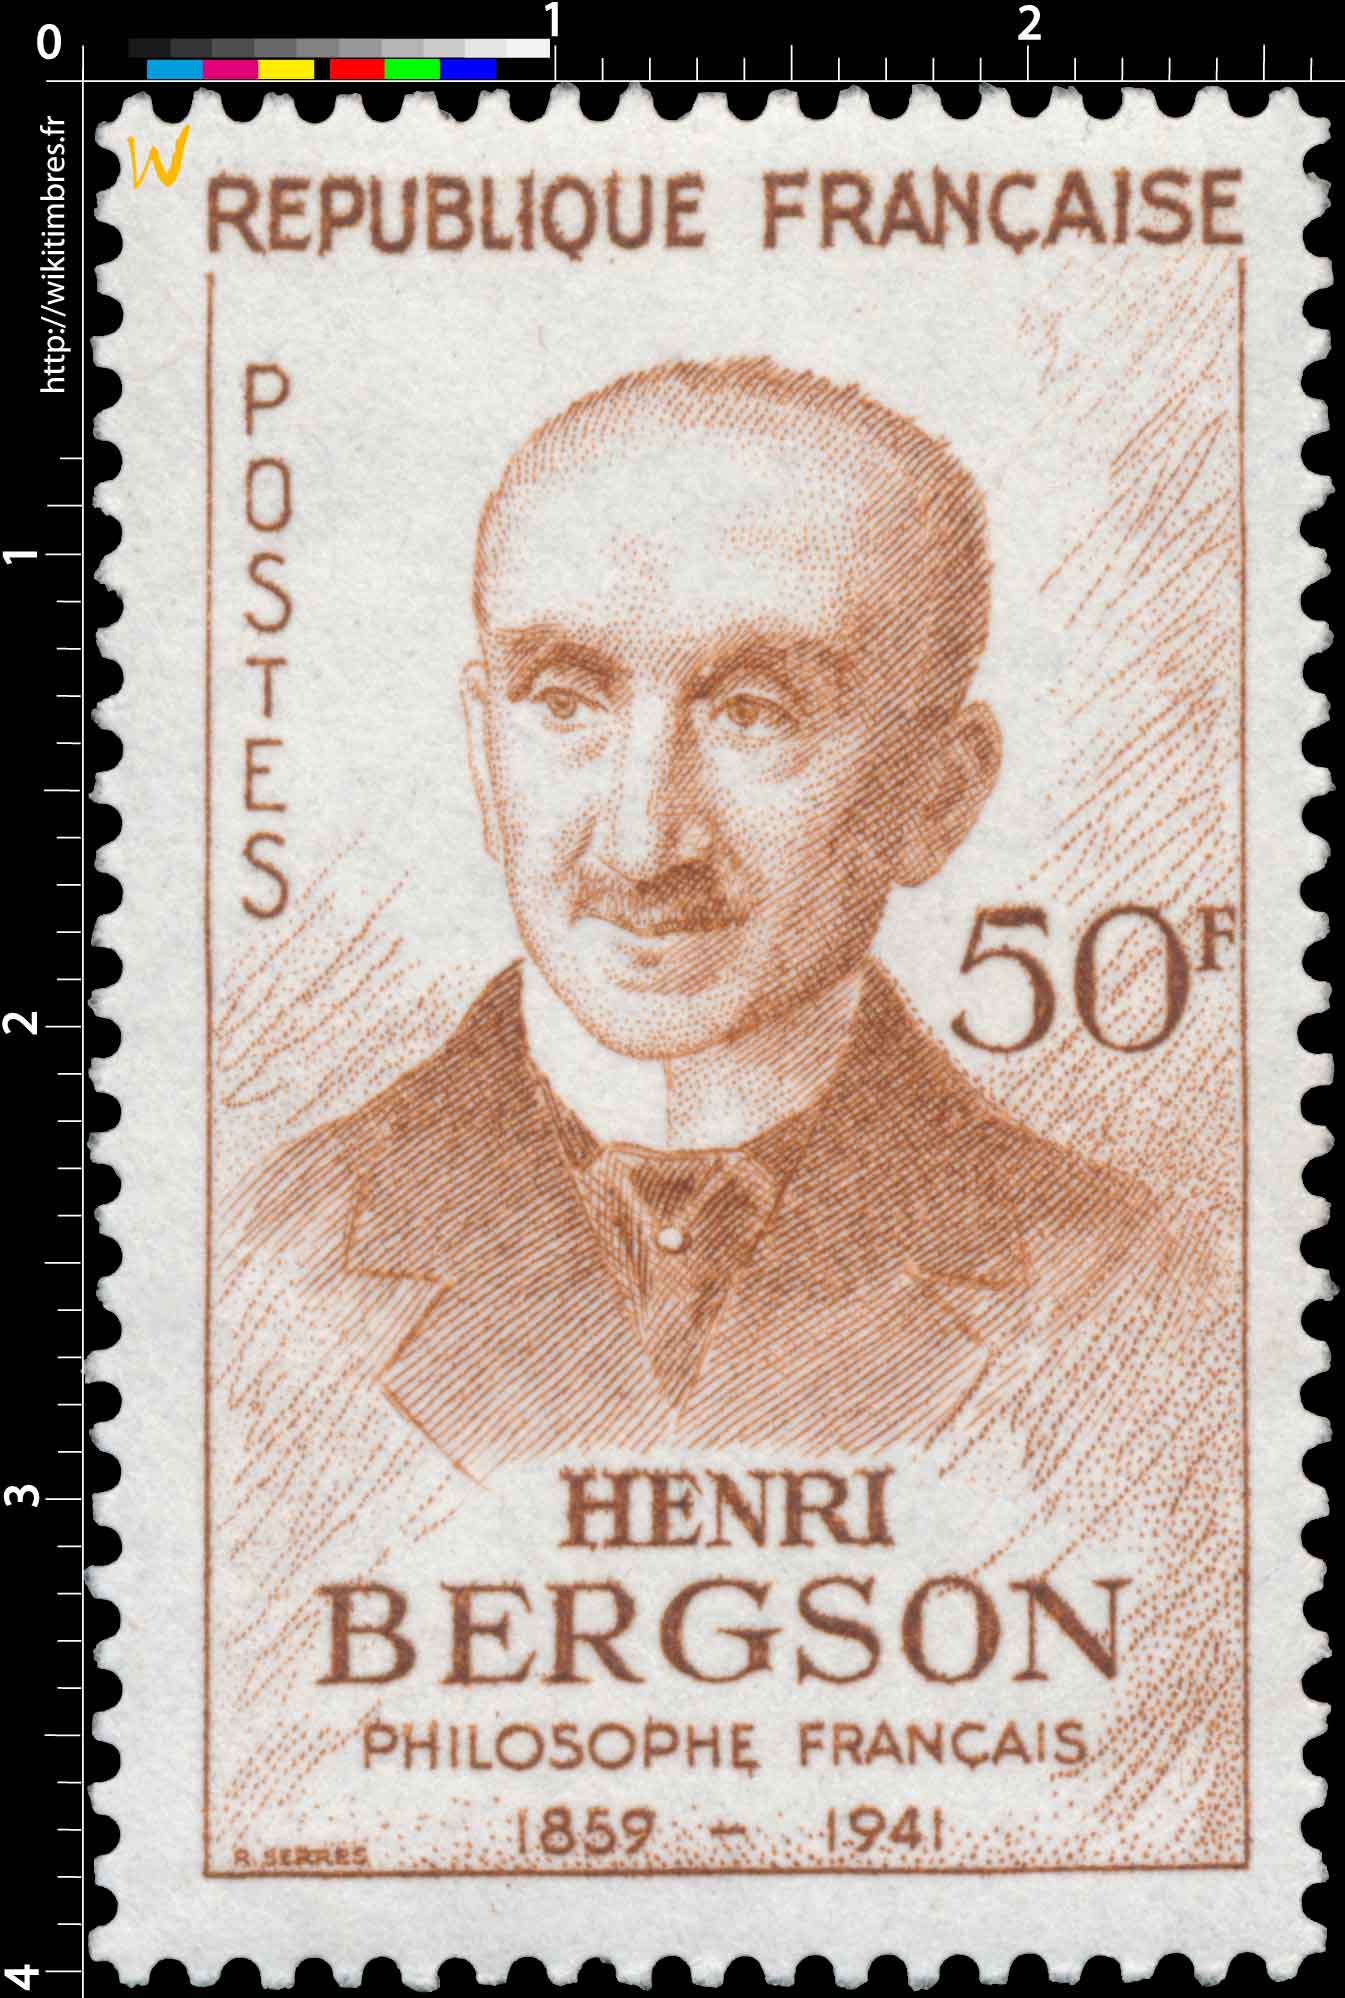 HENRI BERGSON 1859-1941 PHILOSOPHE FRANÇAIS